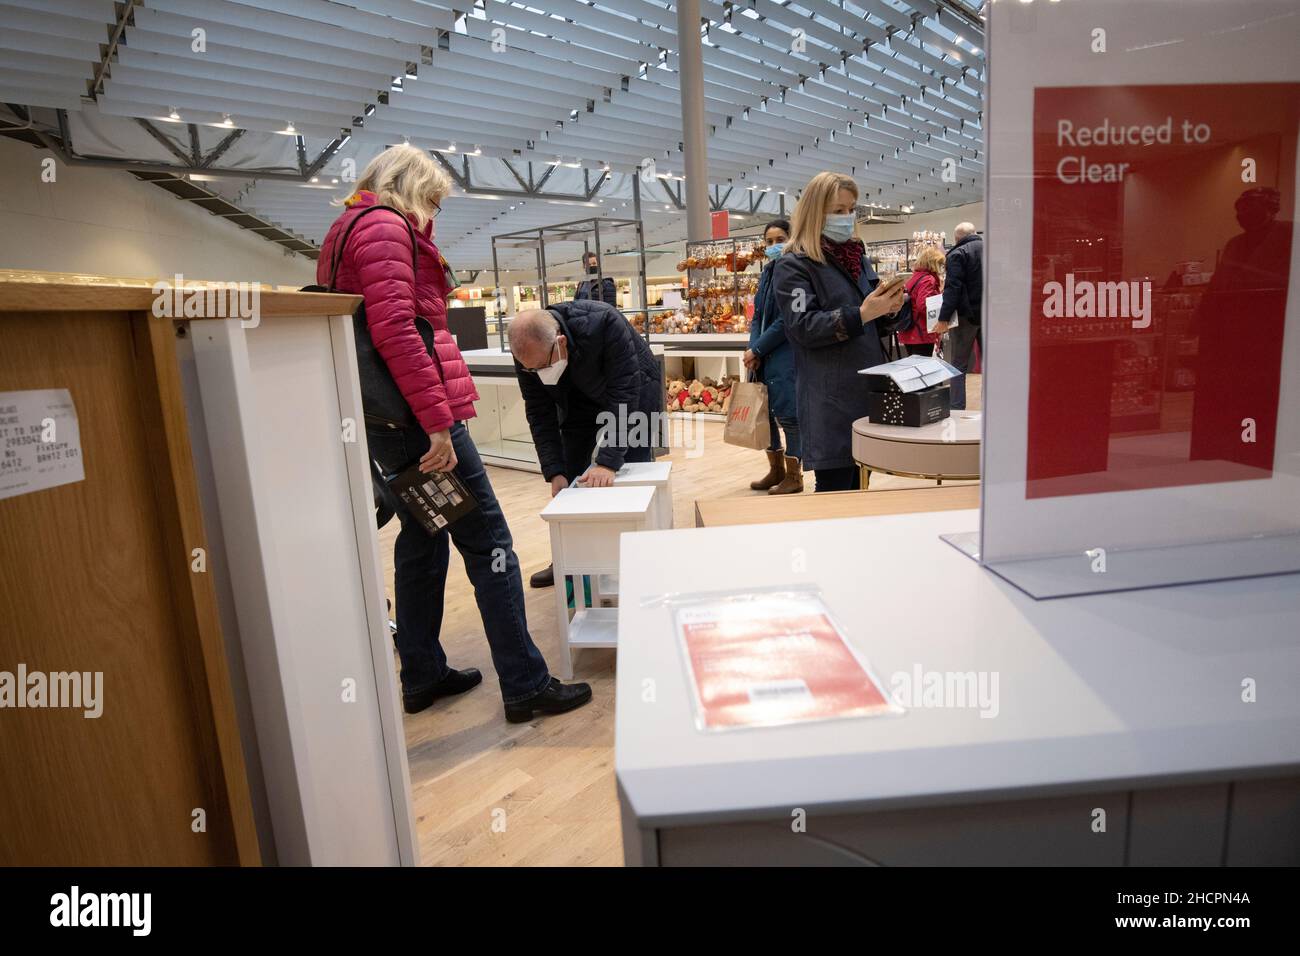 Les acheteurs à la recherche de bonnes affaires dans le rayon ameublement du grand magasin John Lewis pendant les soldes de janvier, Kingston, Surrey, Angleterre Banque D'Images